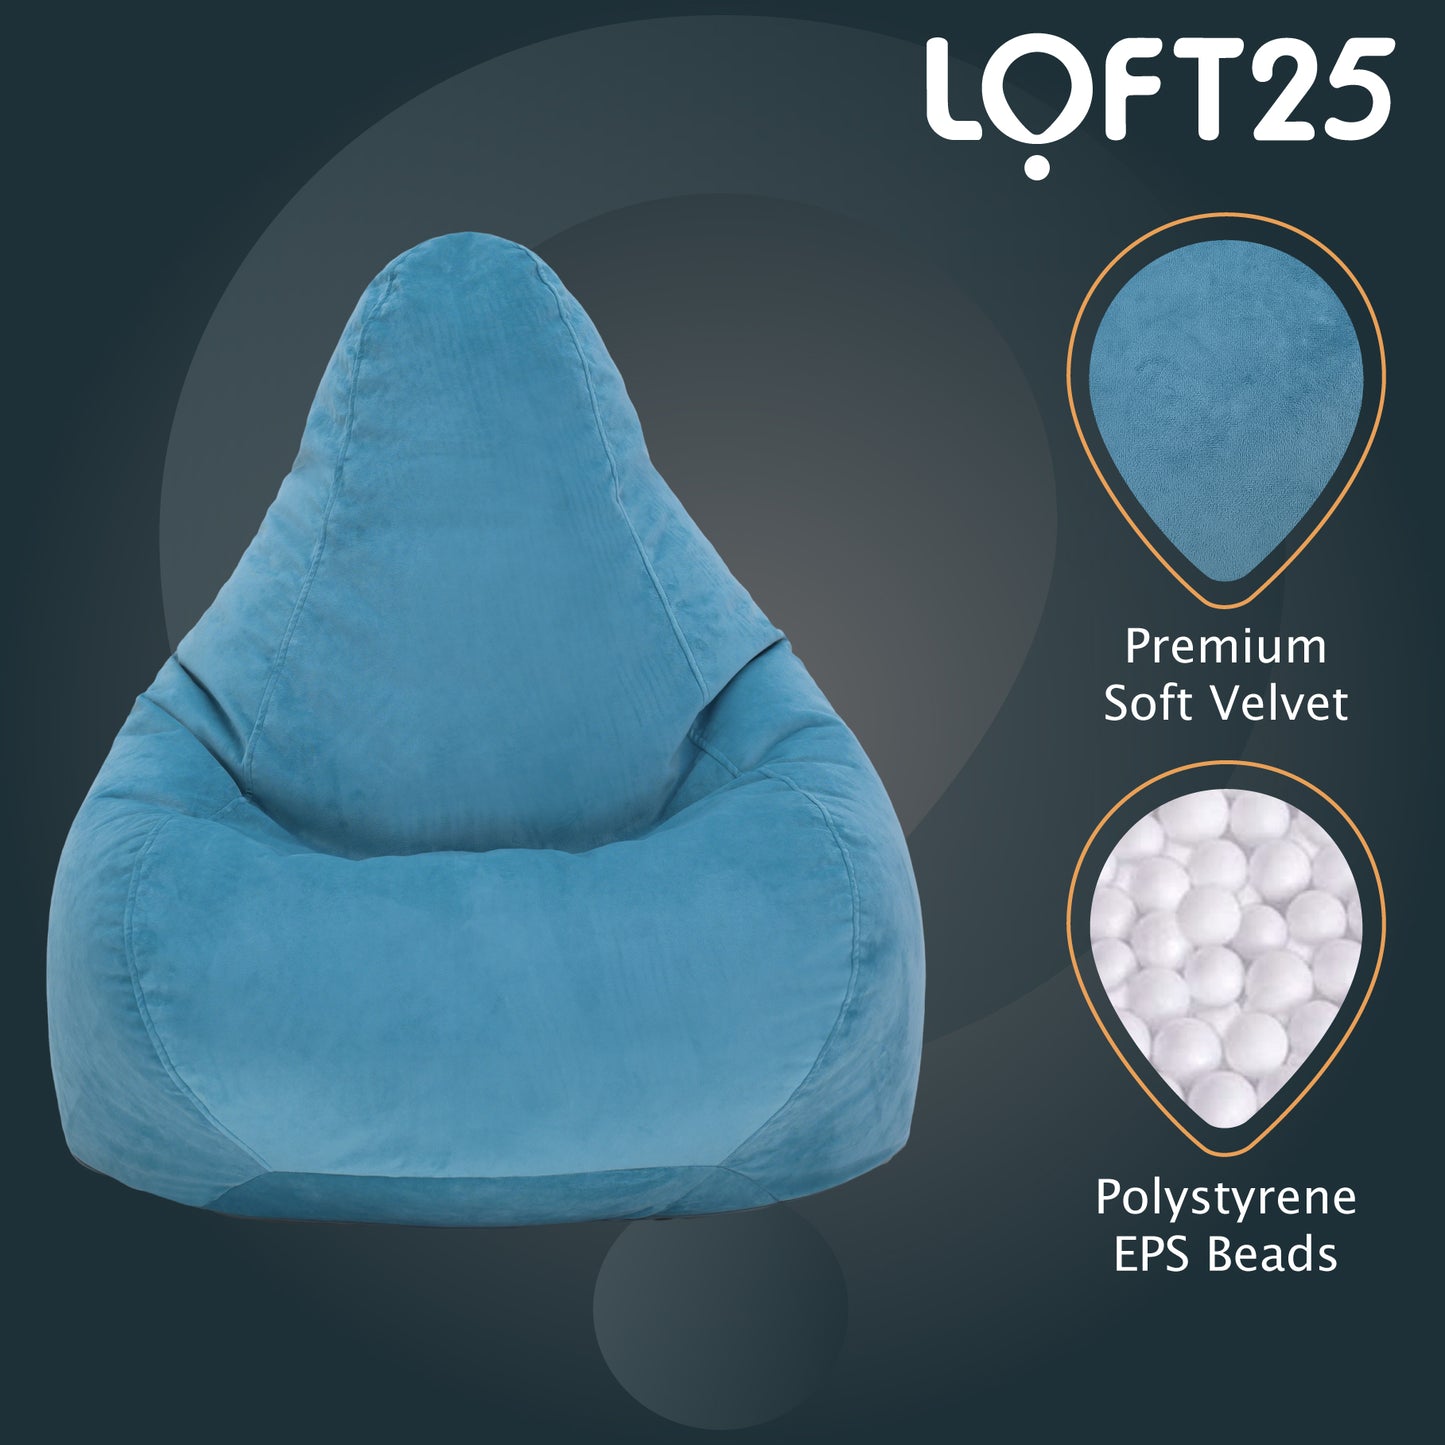 Loft 25 Gamer Recliner Bean Bag Chair